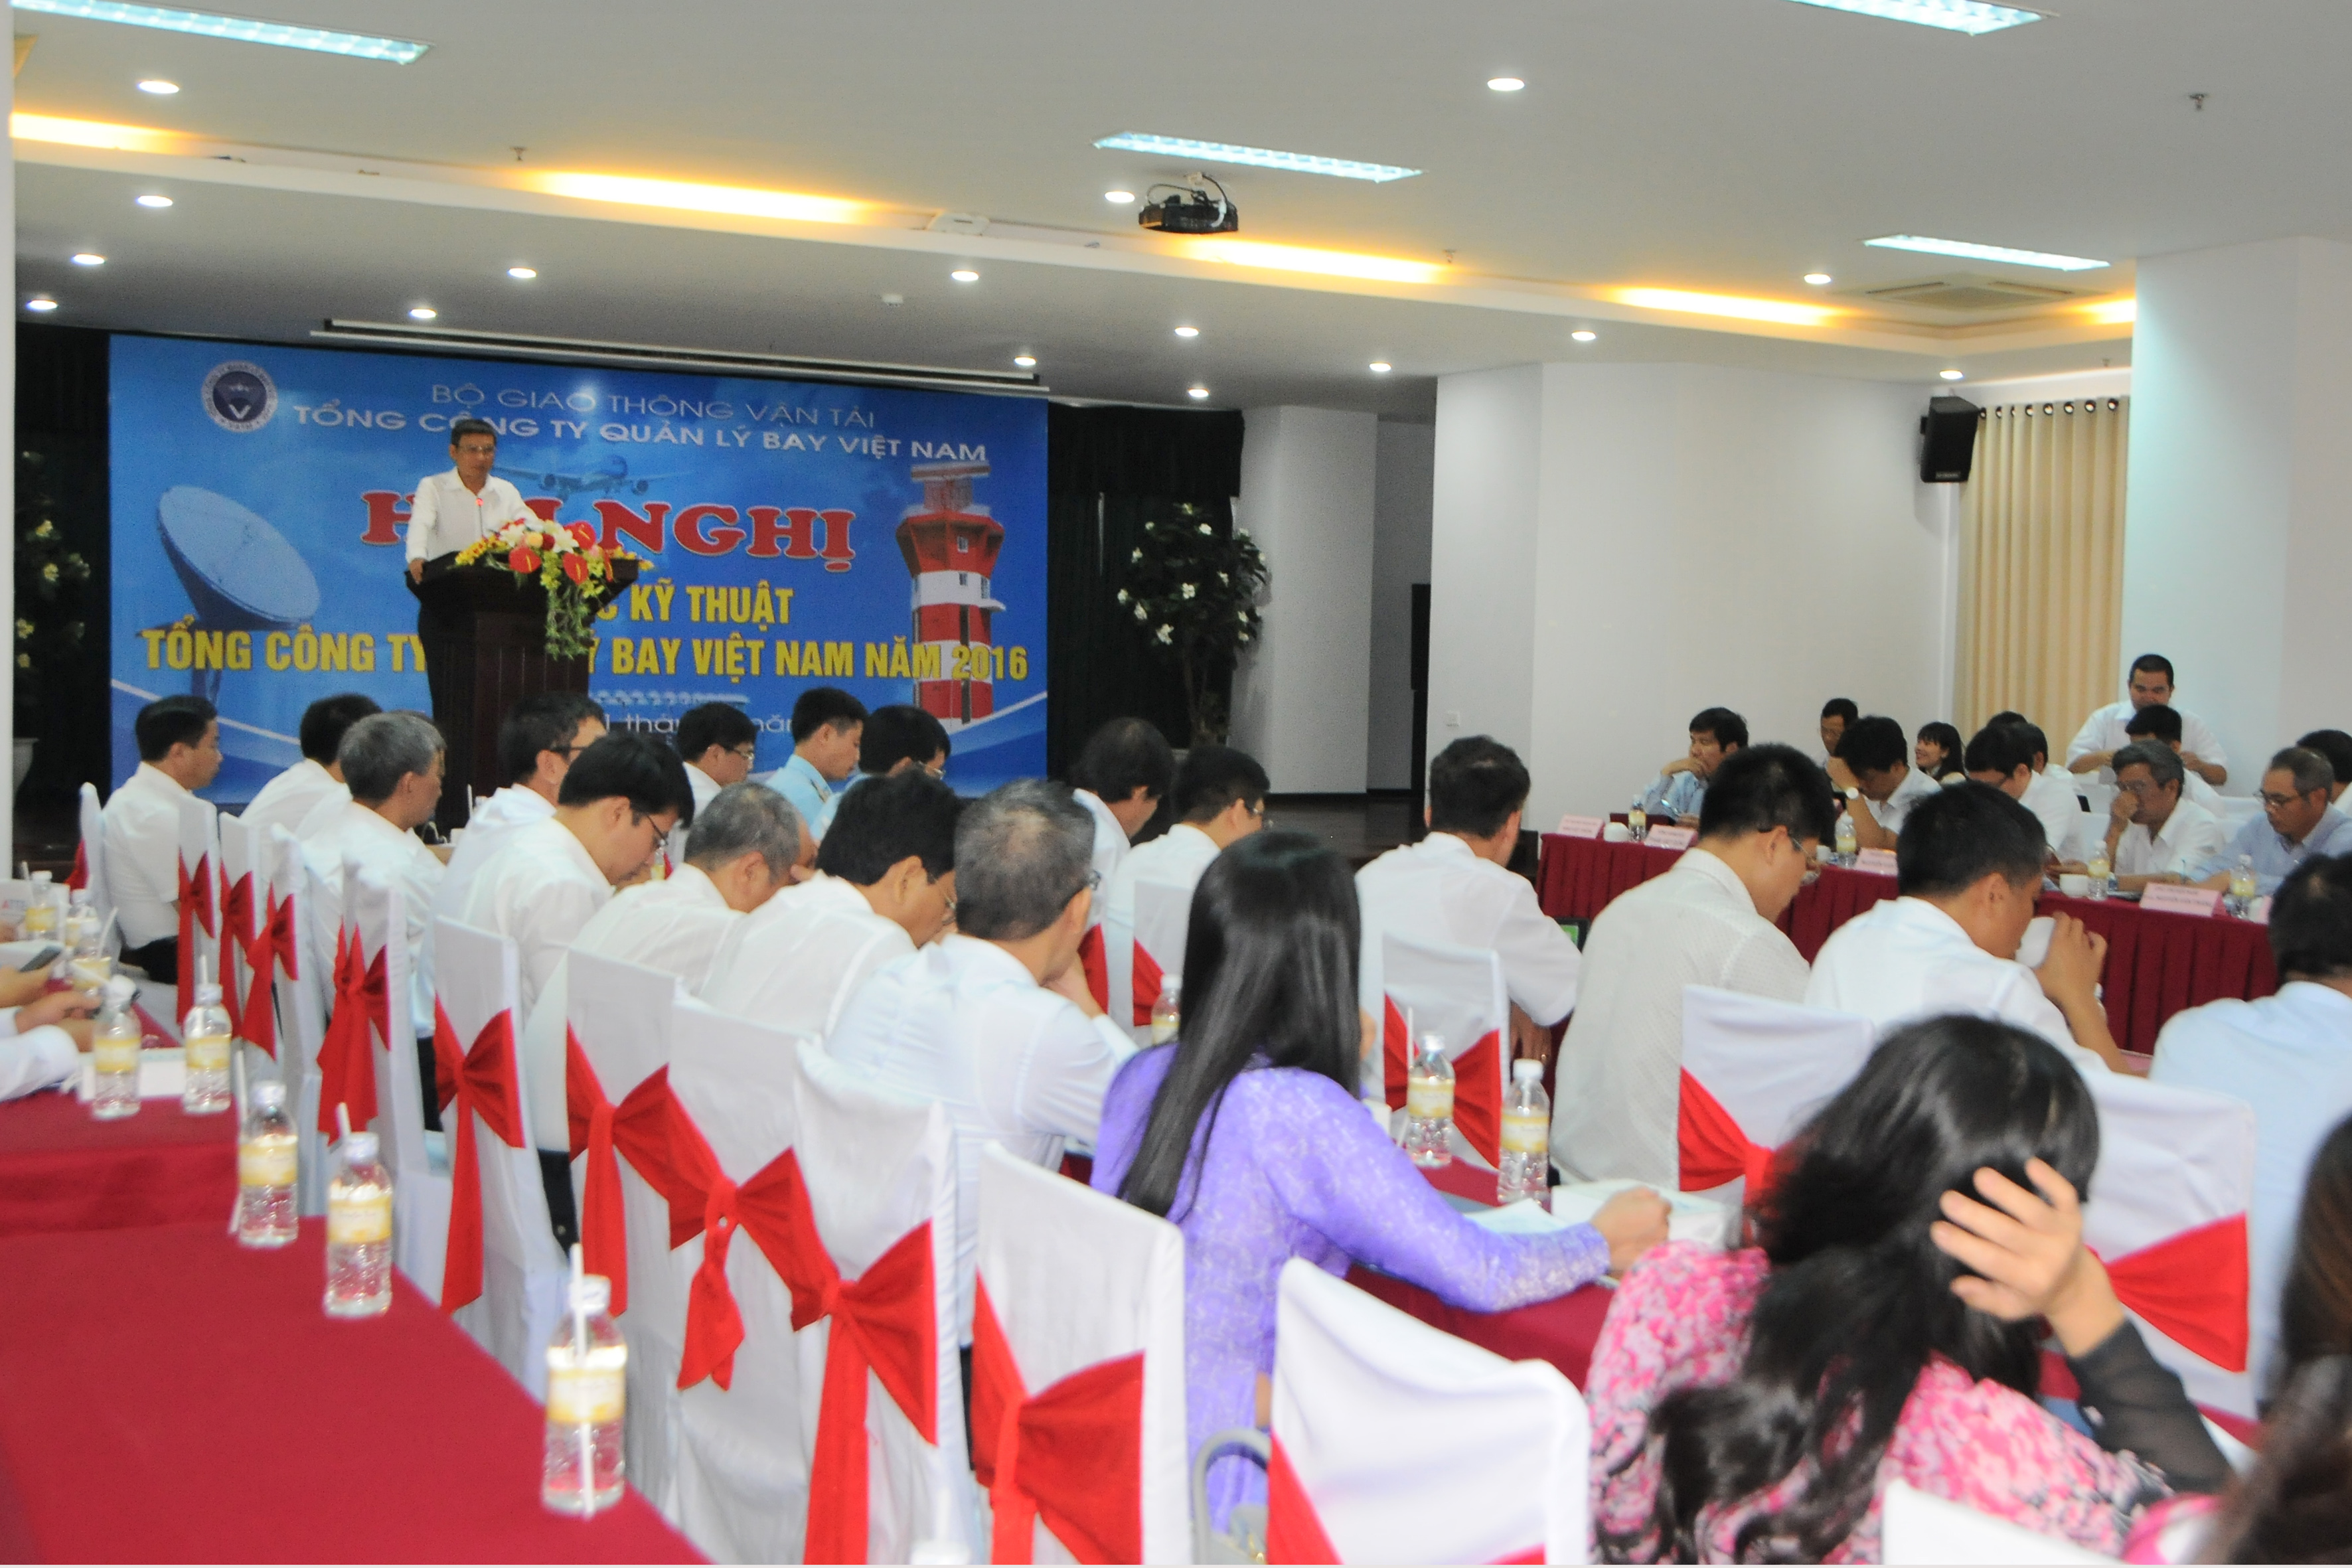 Tổng công ty Quản lý bay Việt Nam thành lập Qũy phát triển Khoa học và công nghệ